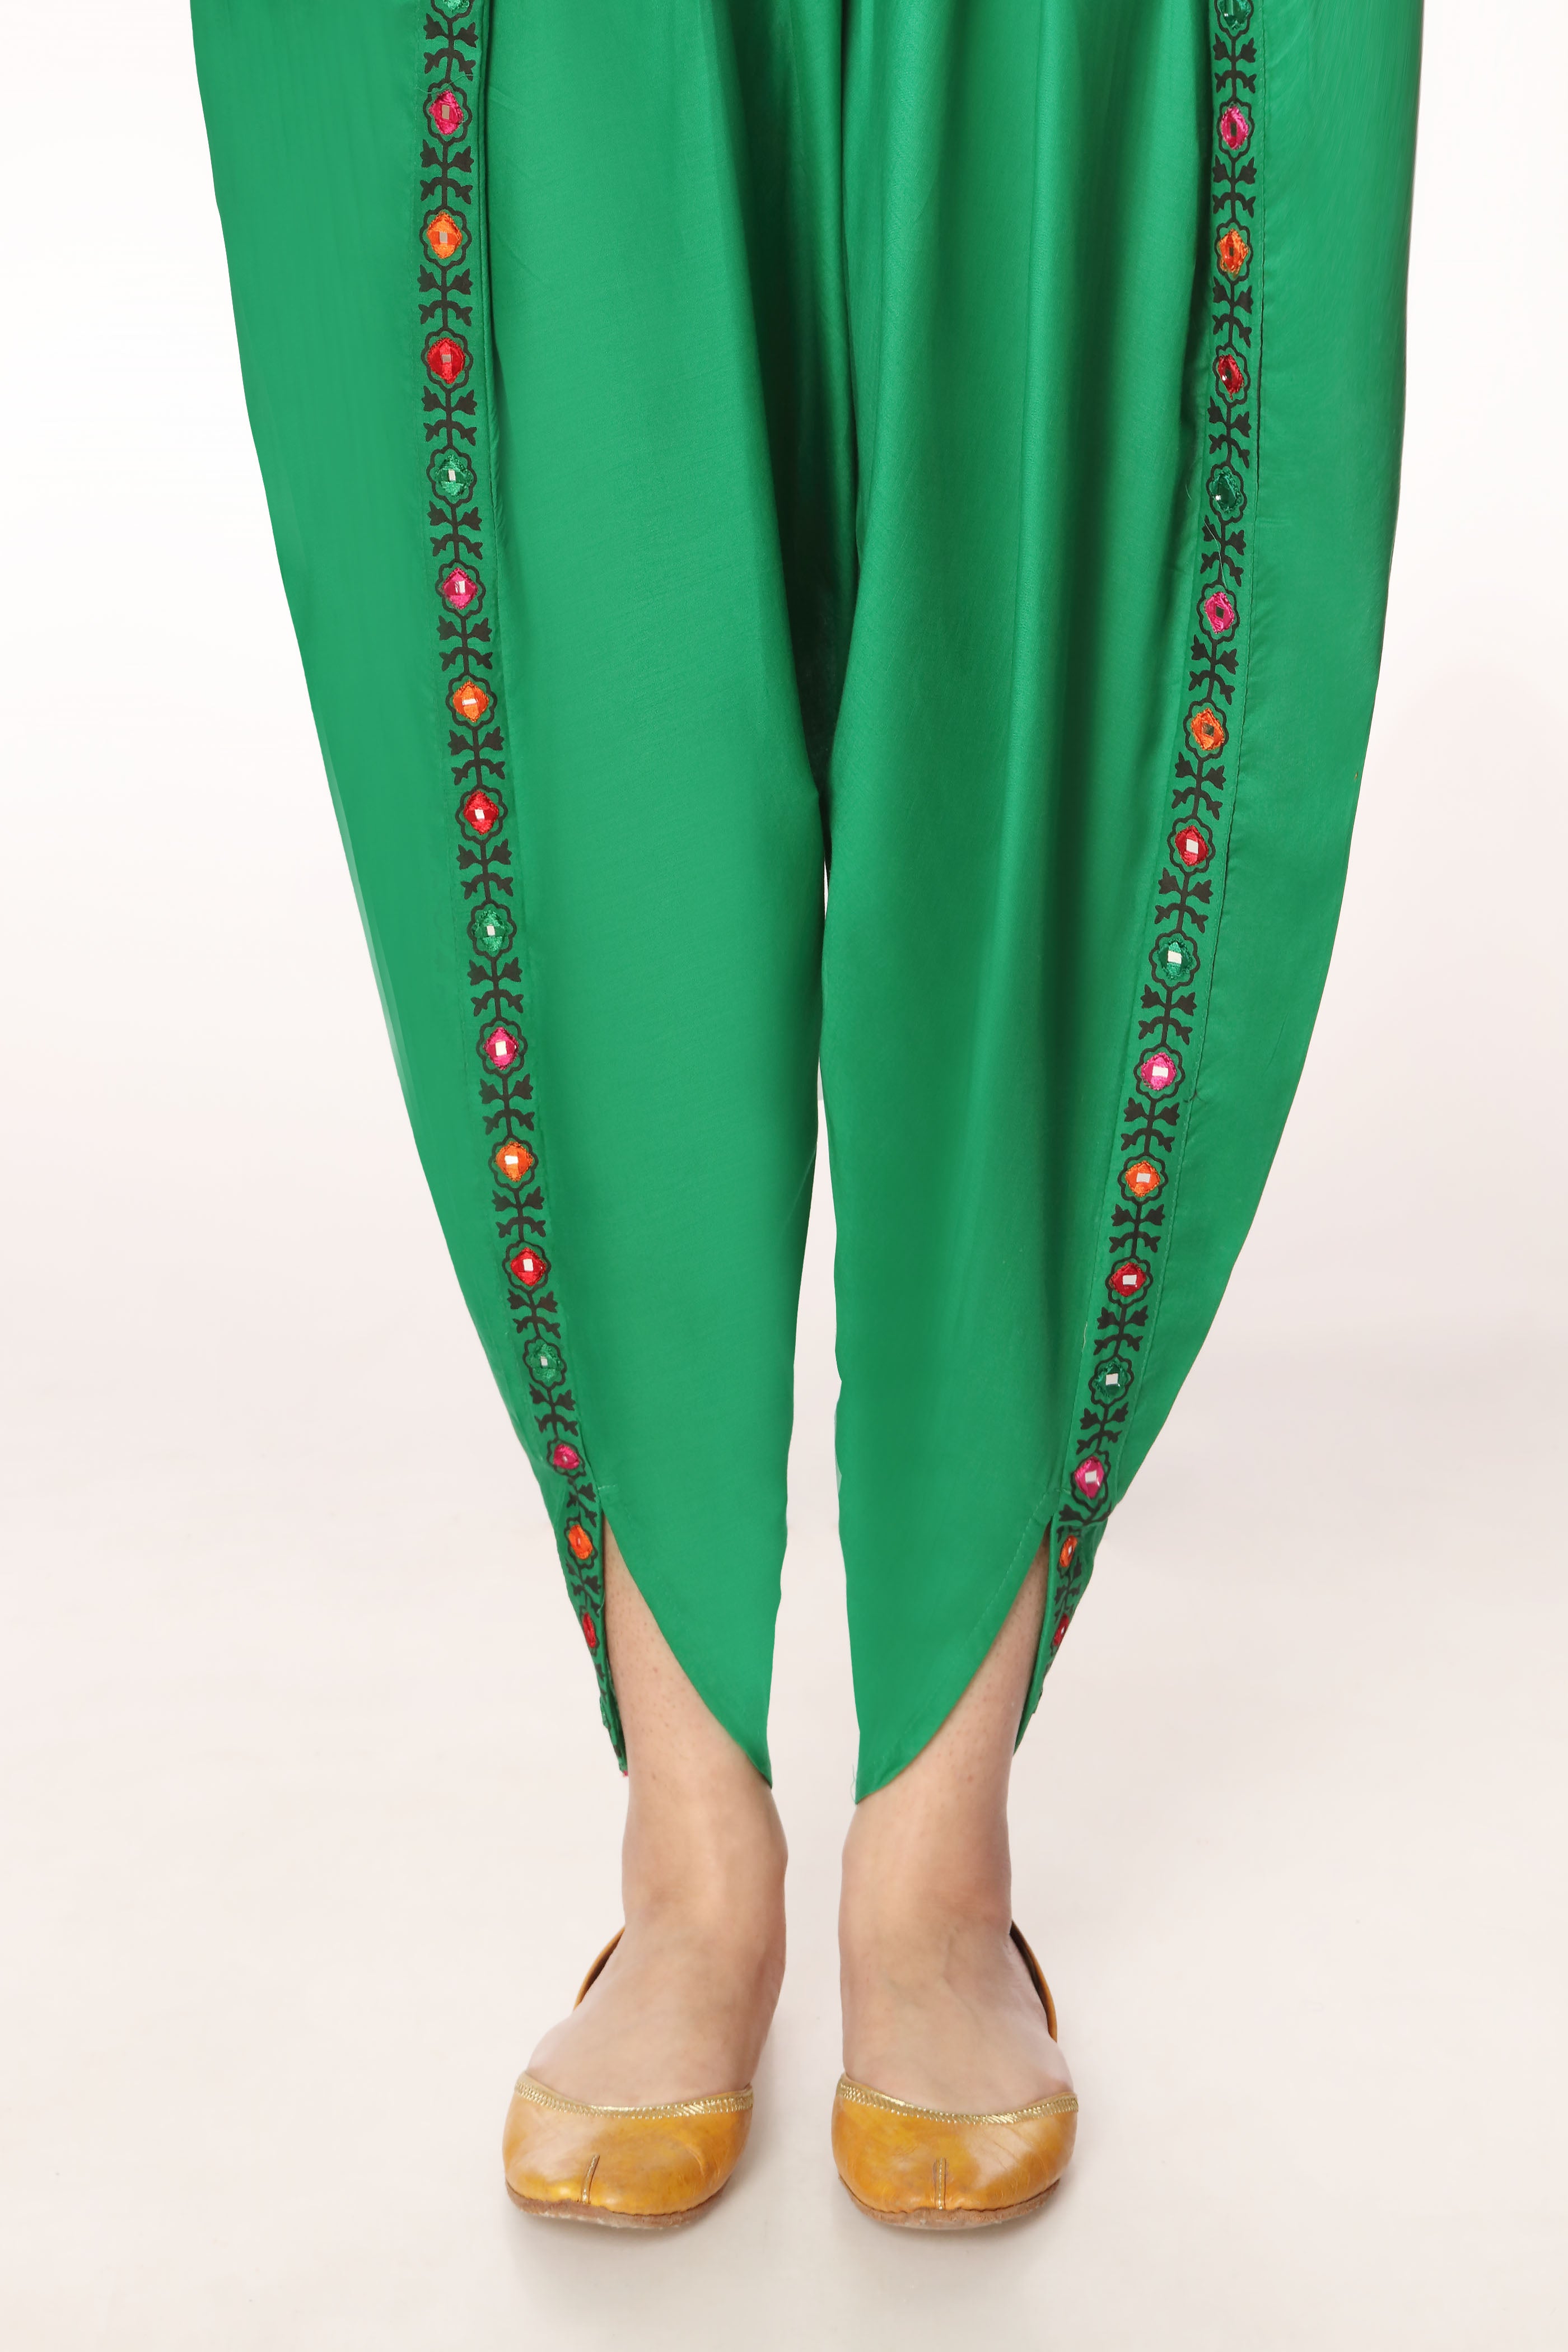 Tulip Sheesha in Green coloured Printed Lawn fabric